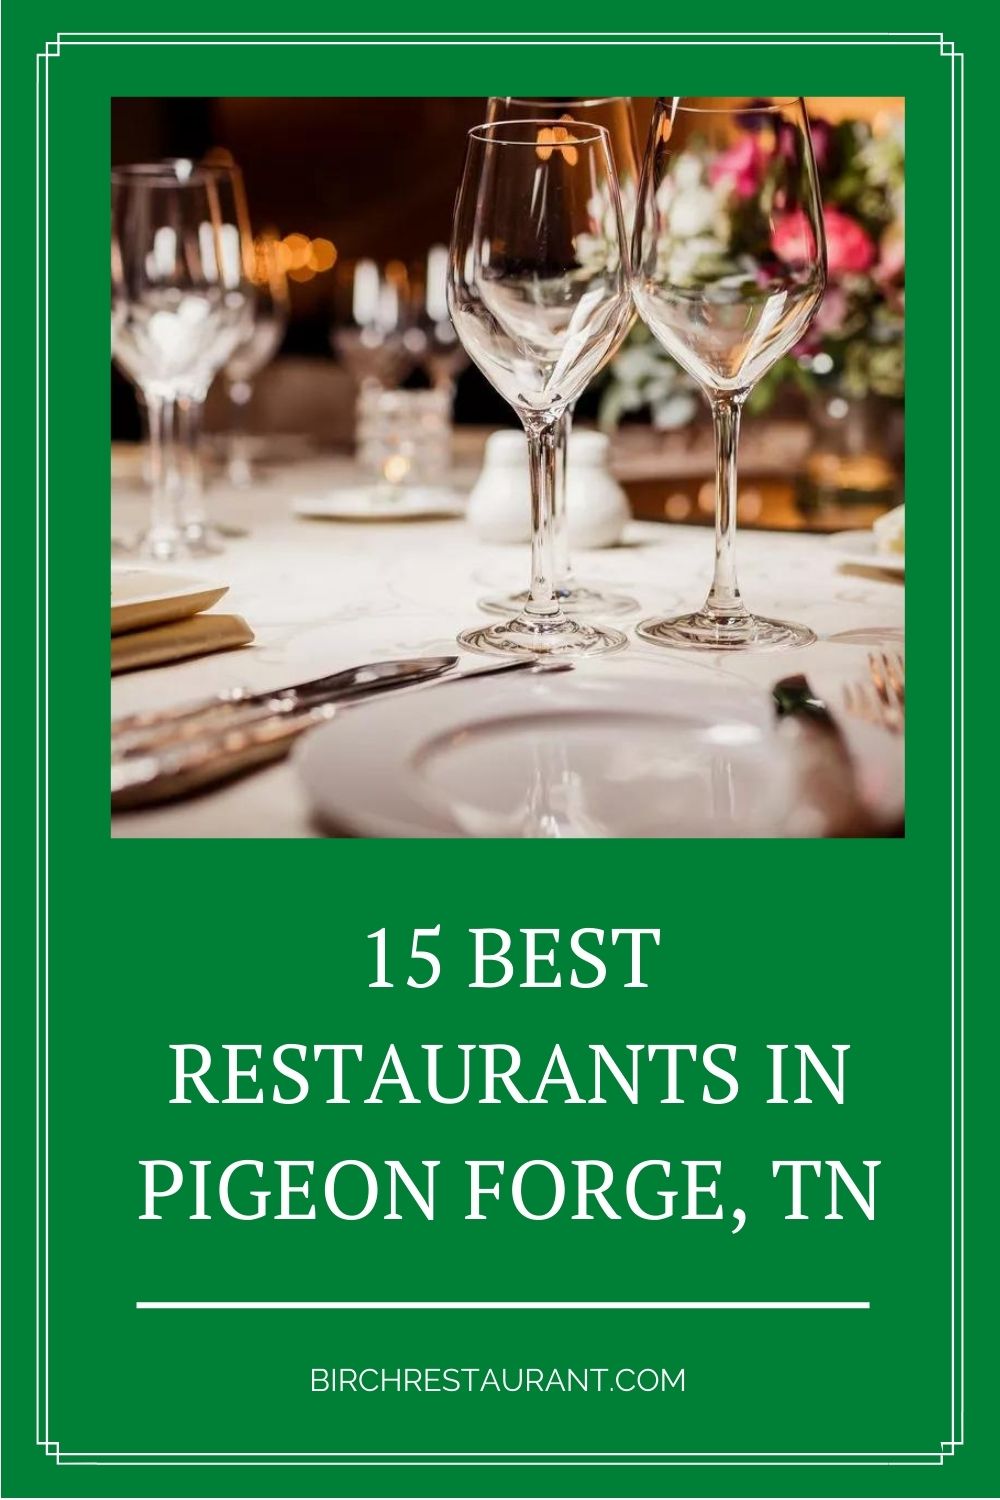 Best Restaurants in Pigeon Forge